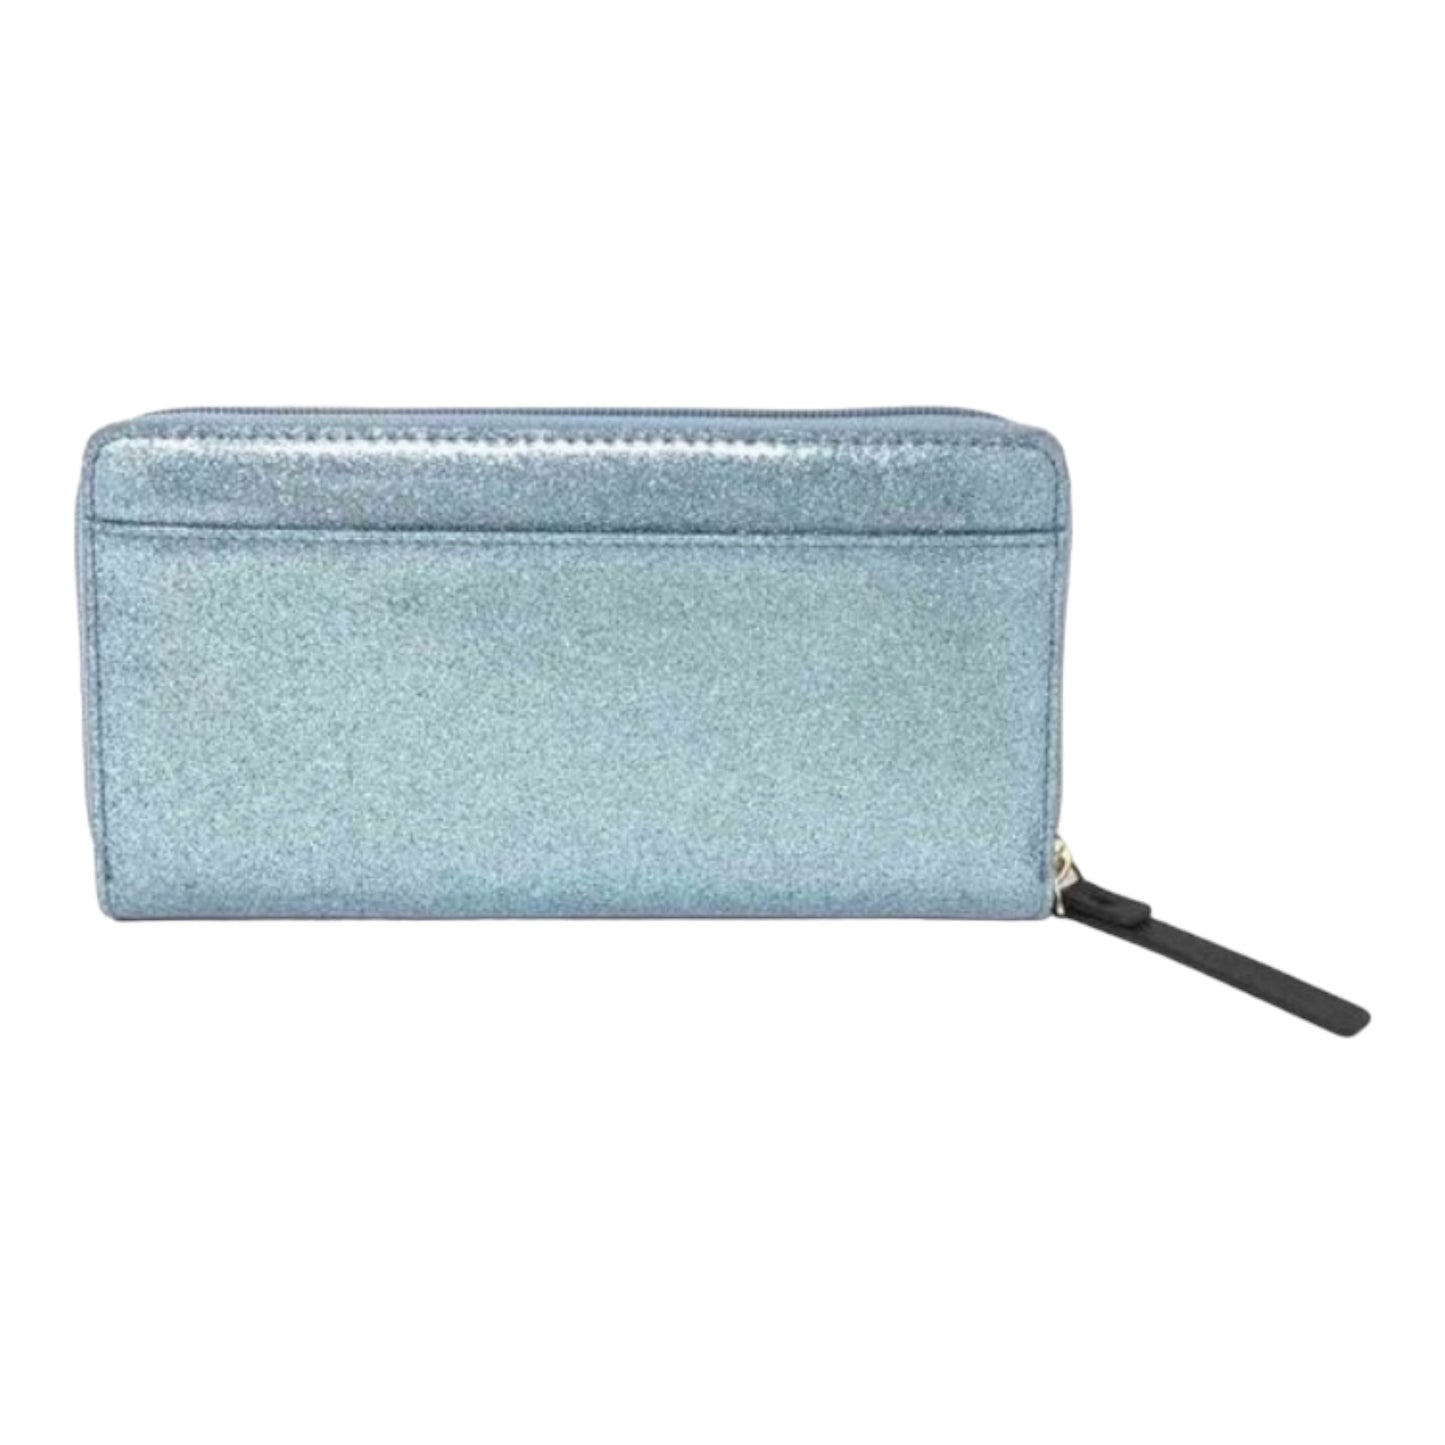 Kate Spade Shimmer Wallet